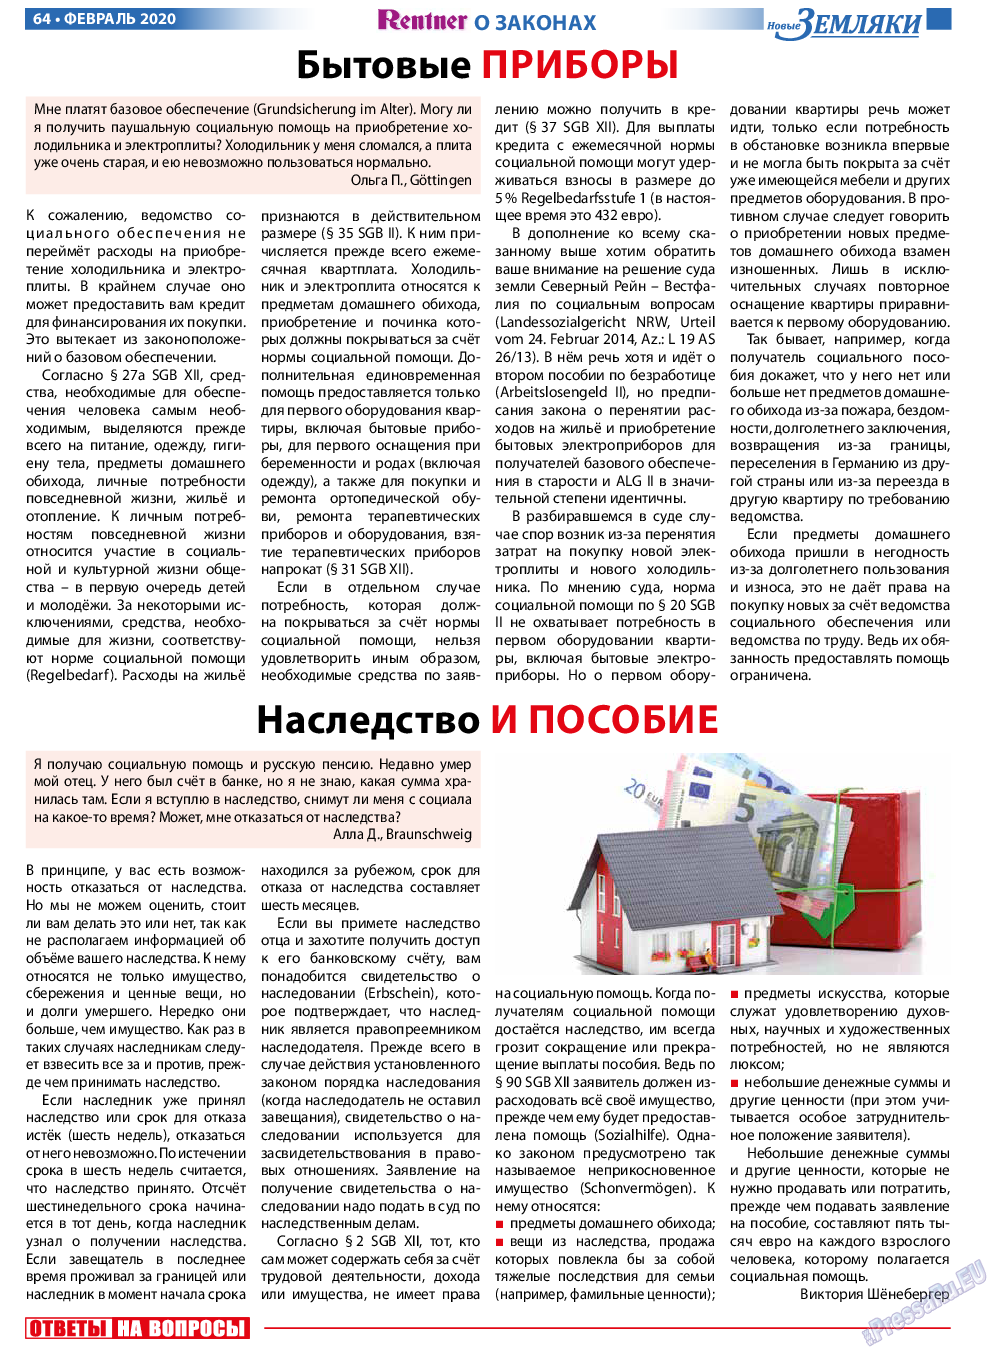 Новые Земляки, газета. 2020 №2 стр.64